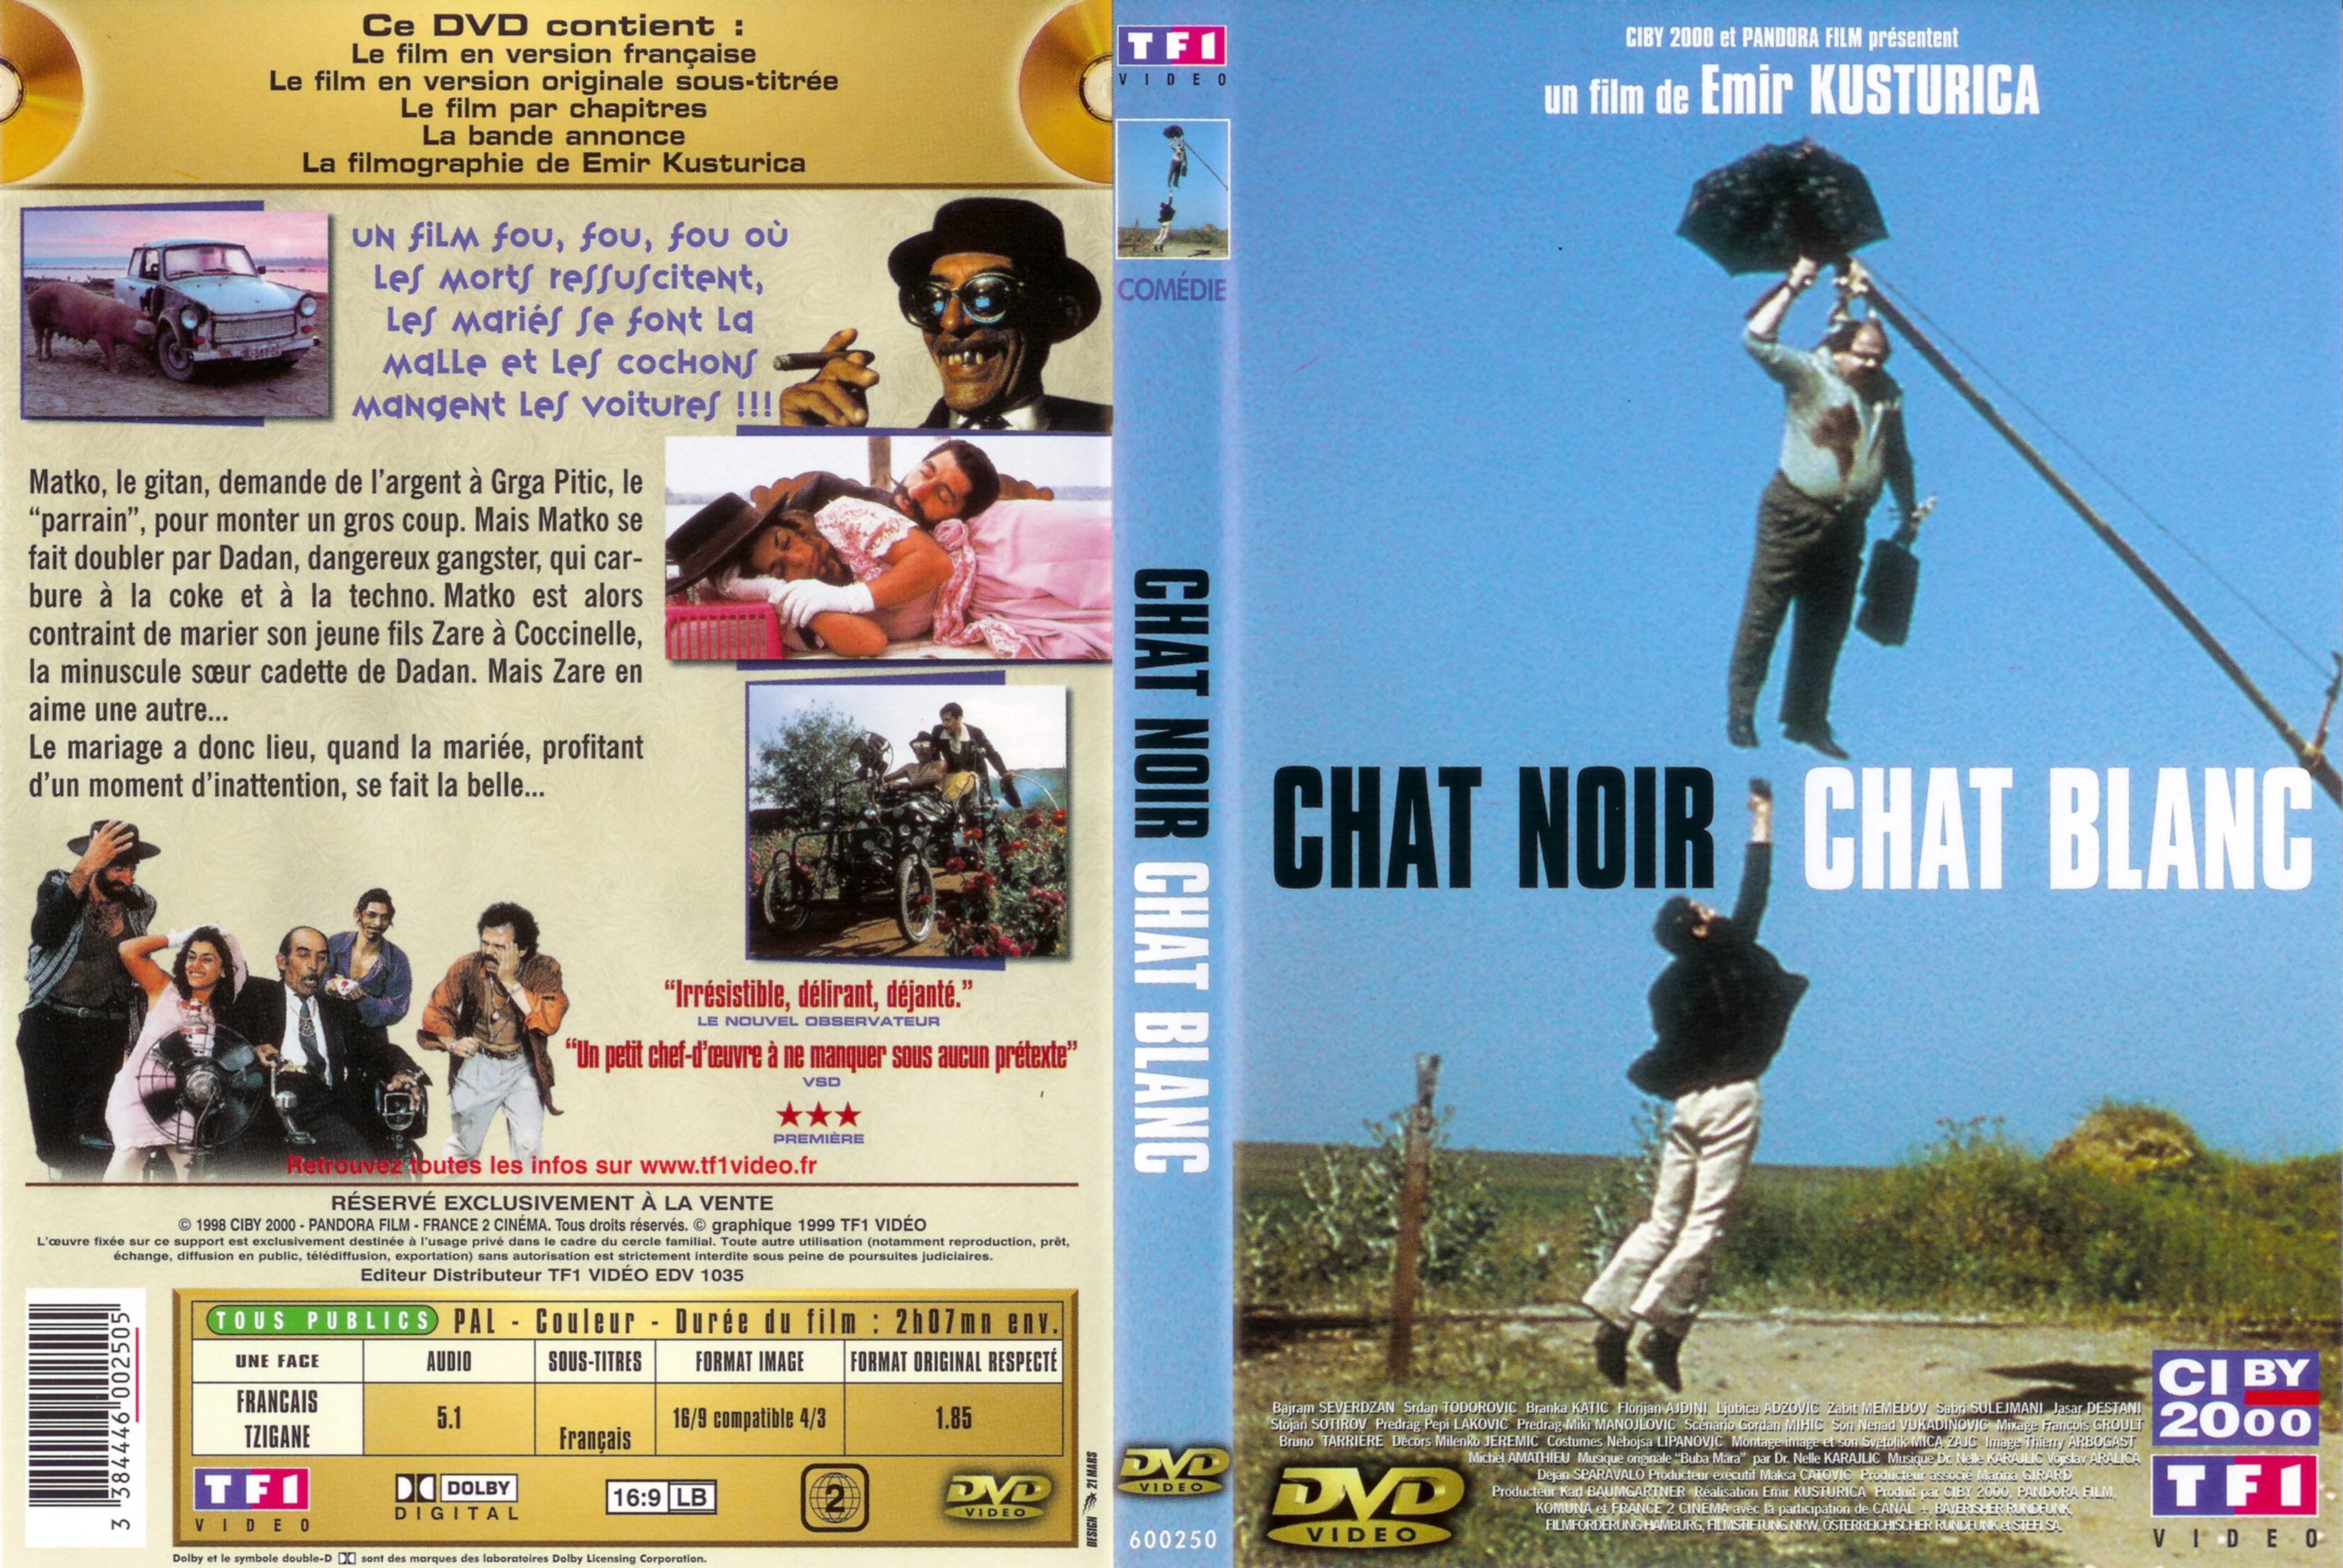 Jaquette DVD Chat noir chat blanc